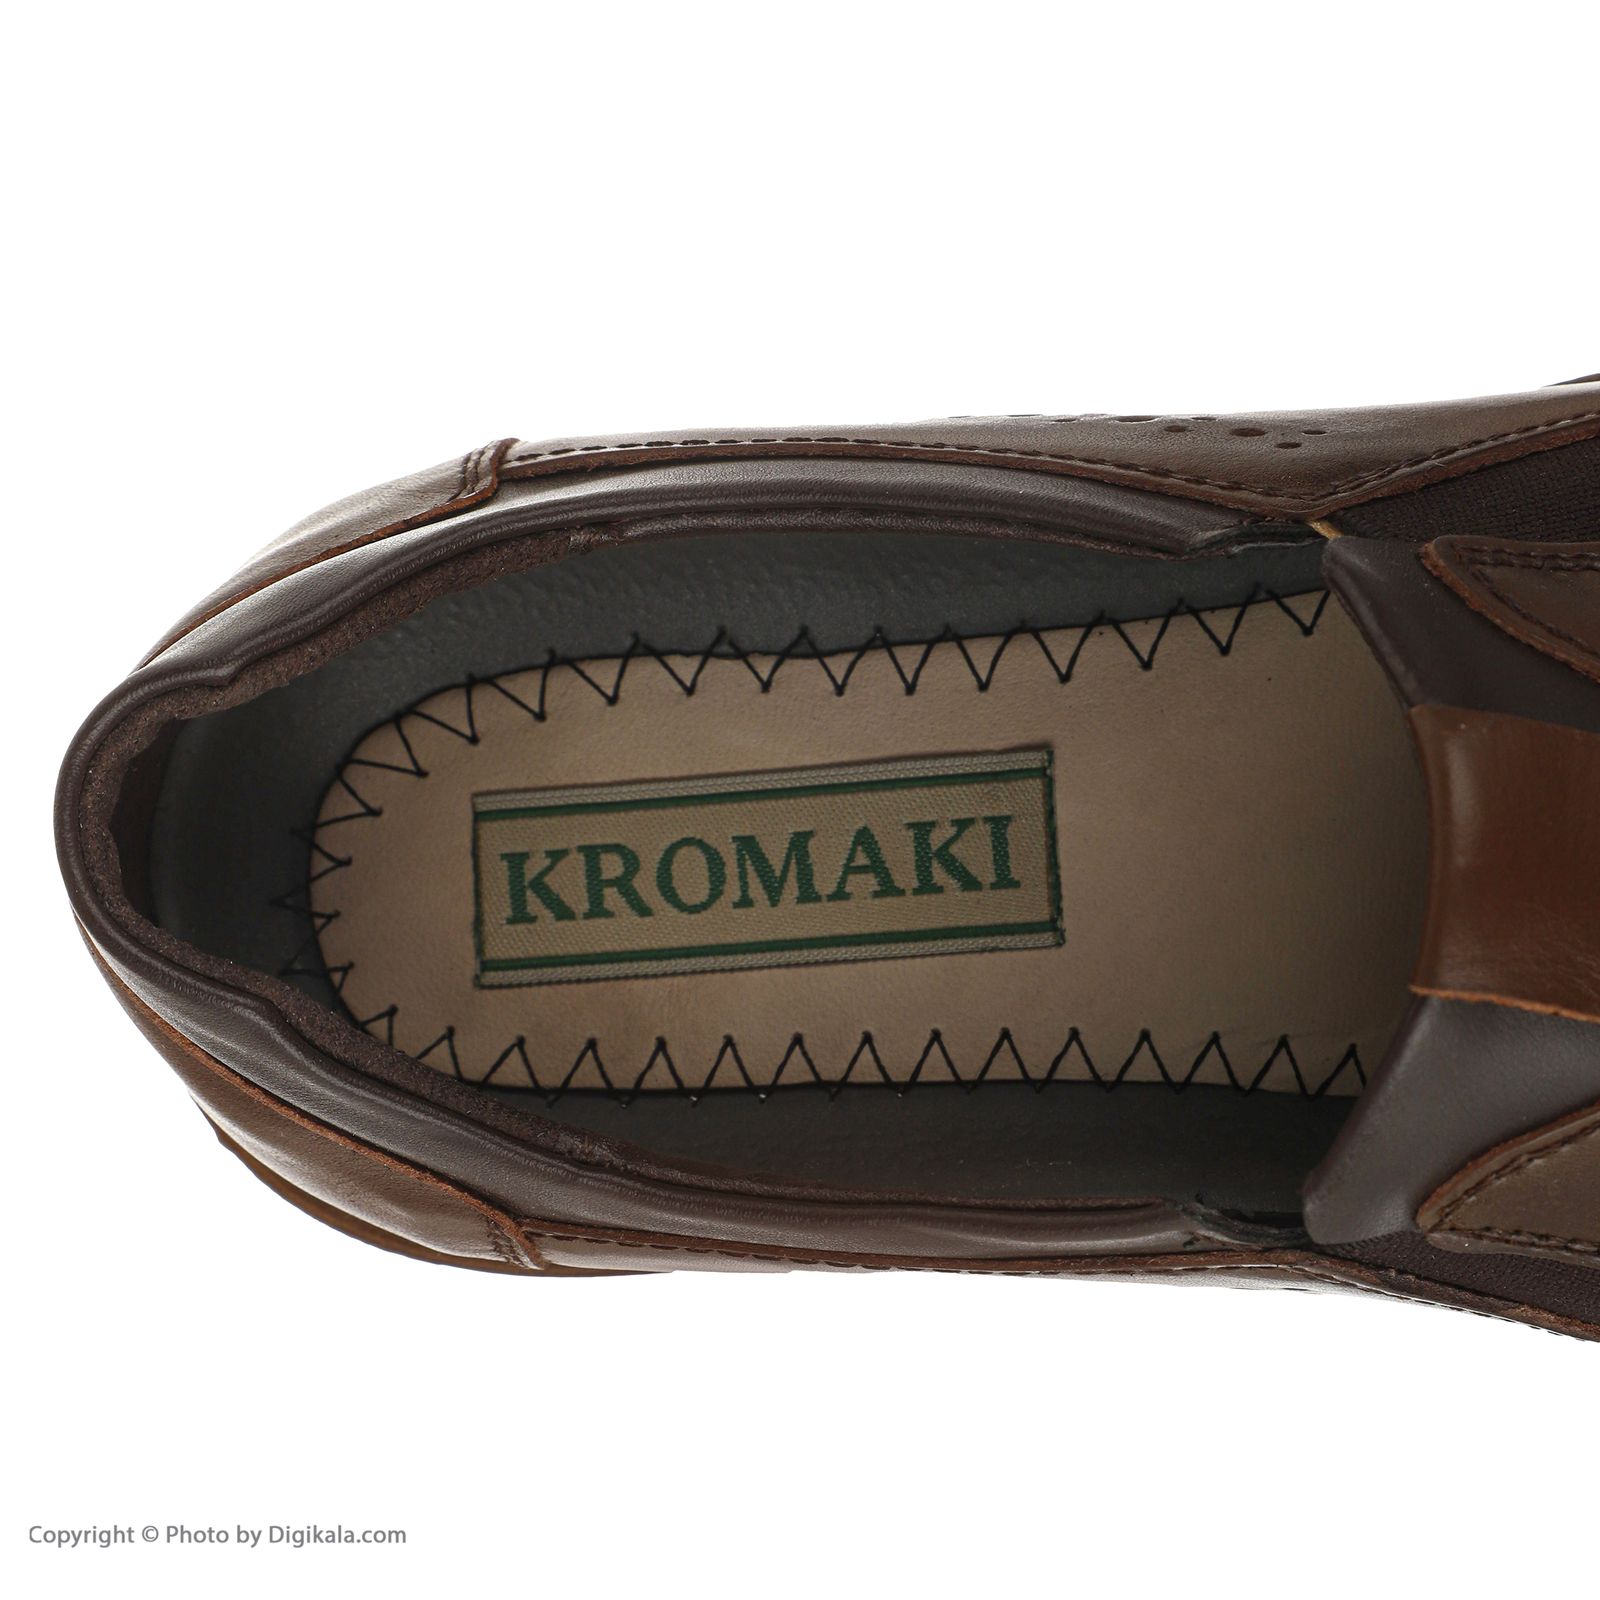 کفش مردانه کروماکی مدل km11122 -  - 3